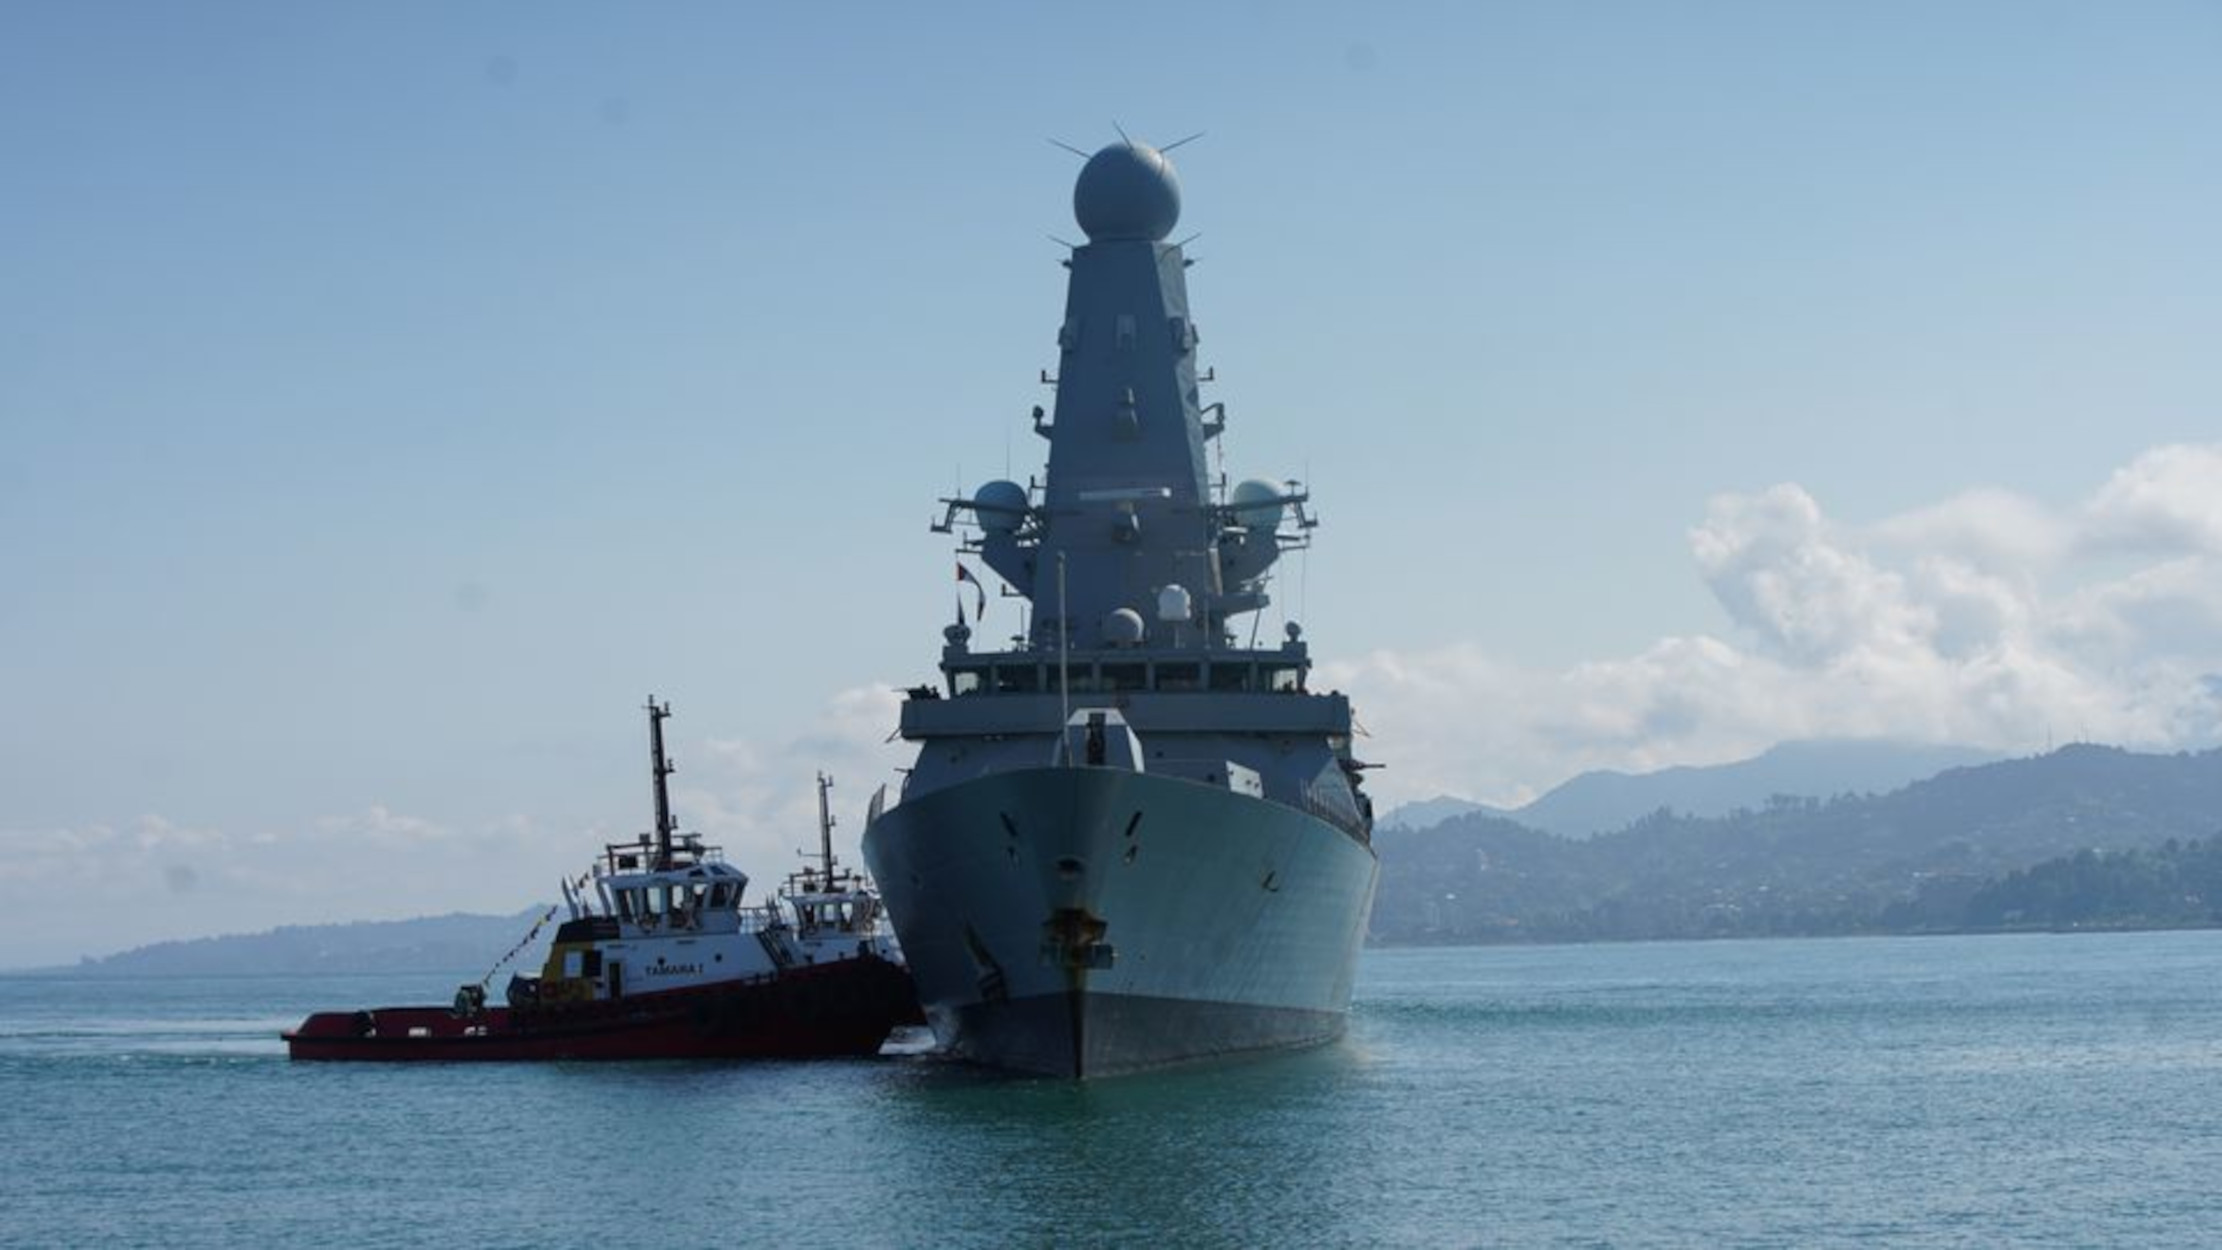 Βρετανία: Σκάνδαλο στο Βασιλικό Ναυτικό – Σεξουαλική παρενόχληση και καψόνια σε γυναίκα αξιωματικό